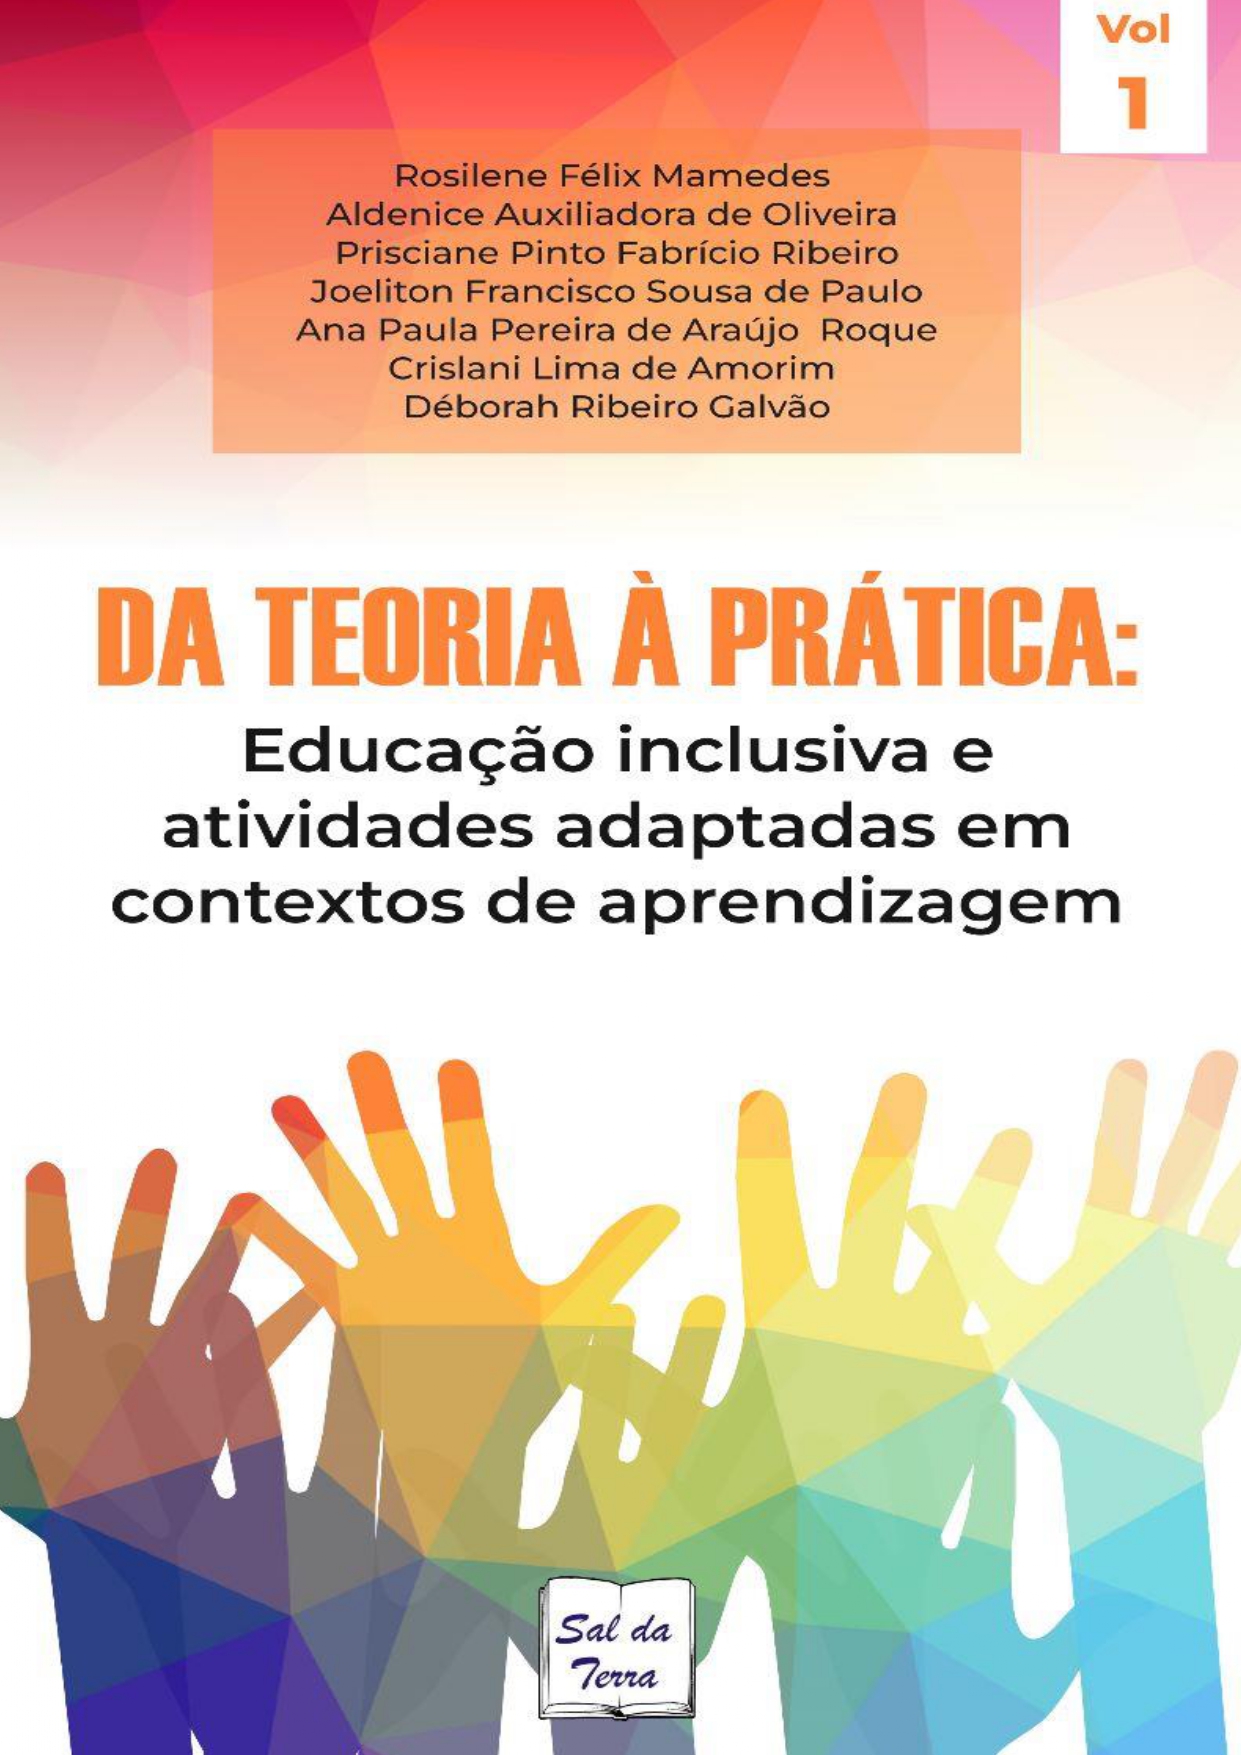 Ebook2 Vol1 da Teoria a Pratica Educação inclusiva e atividades adaptadas